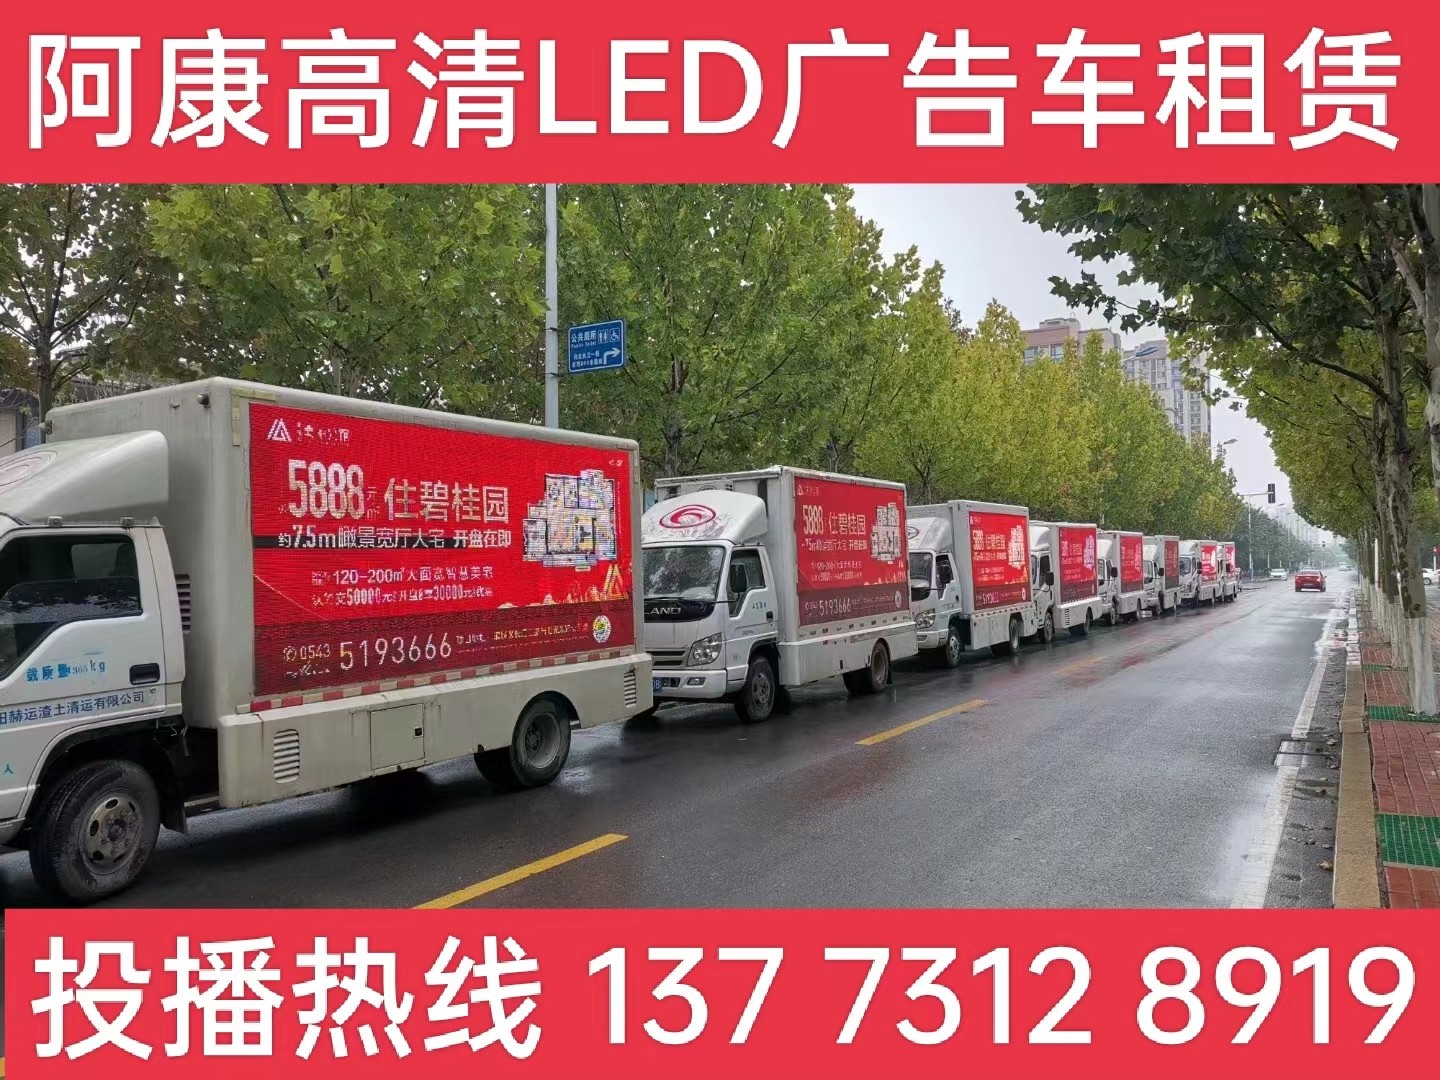 扬中宣传车租赁公司-楼盘LED广告车投放